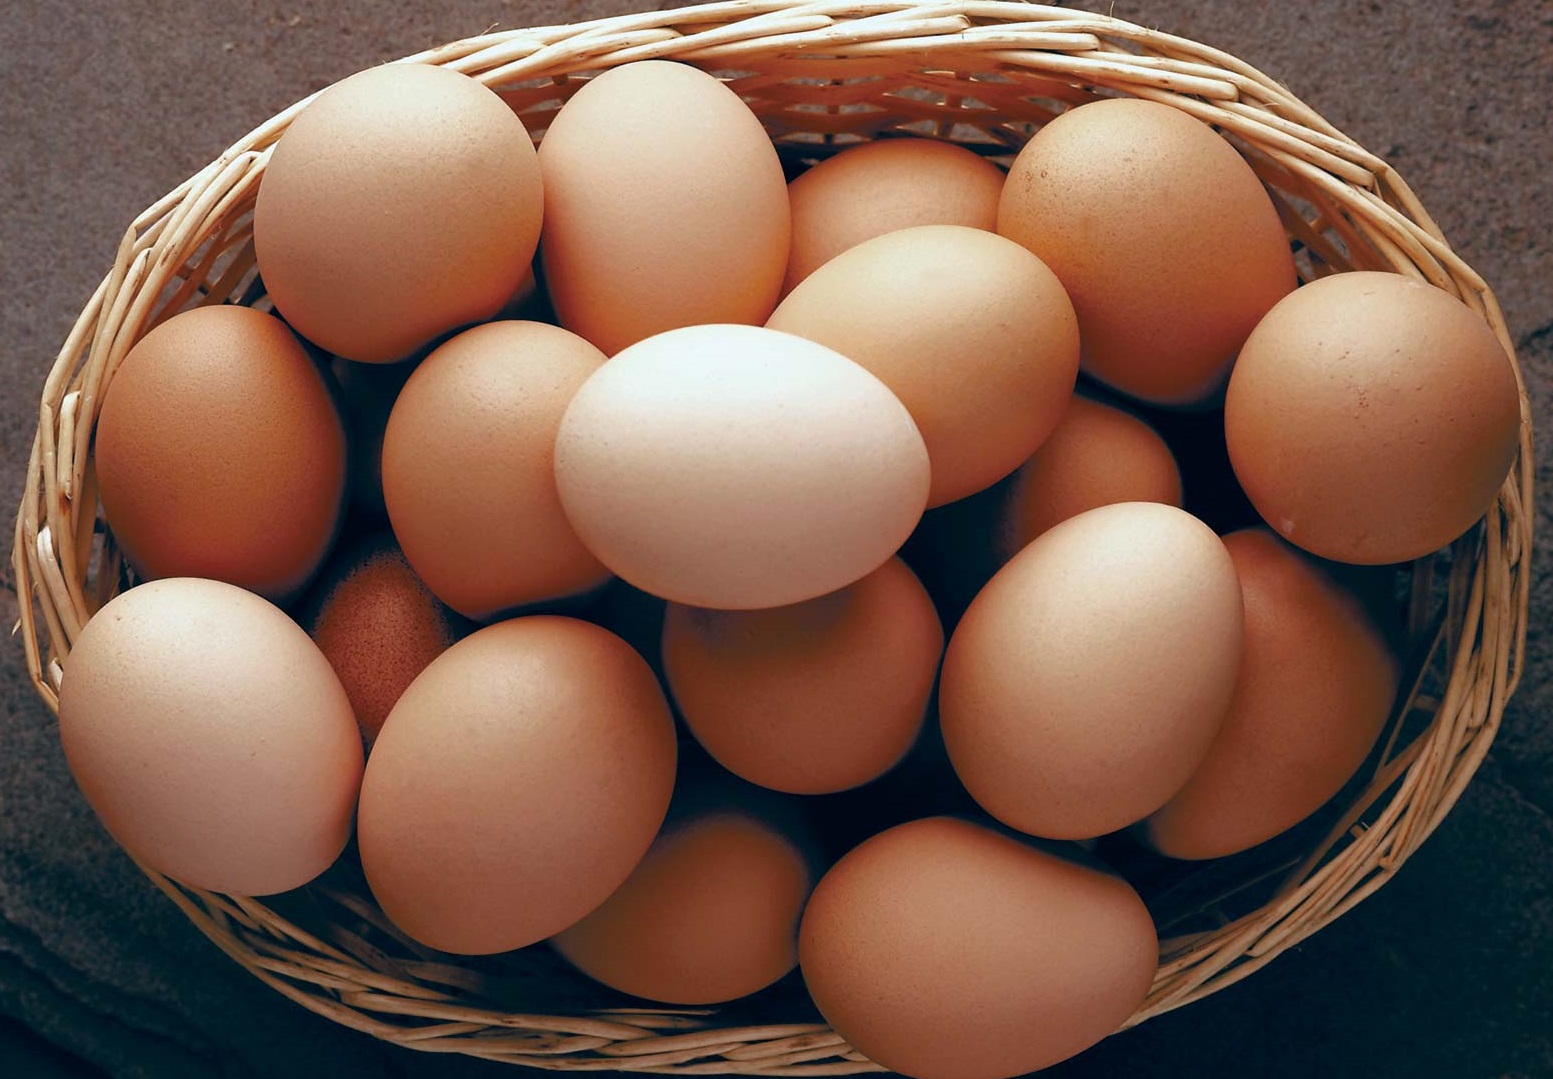 تخم مرغ - دلایل ریزش مژه